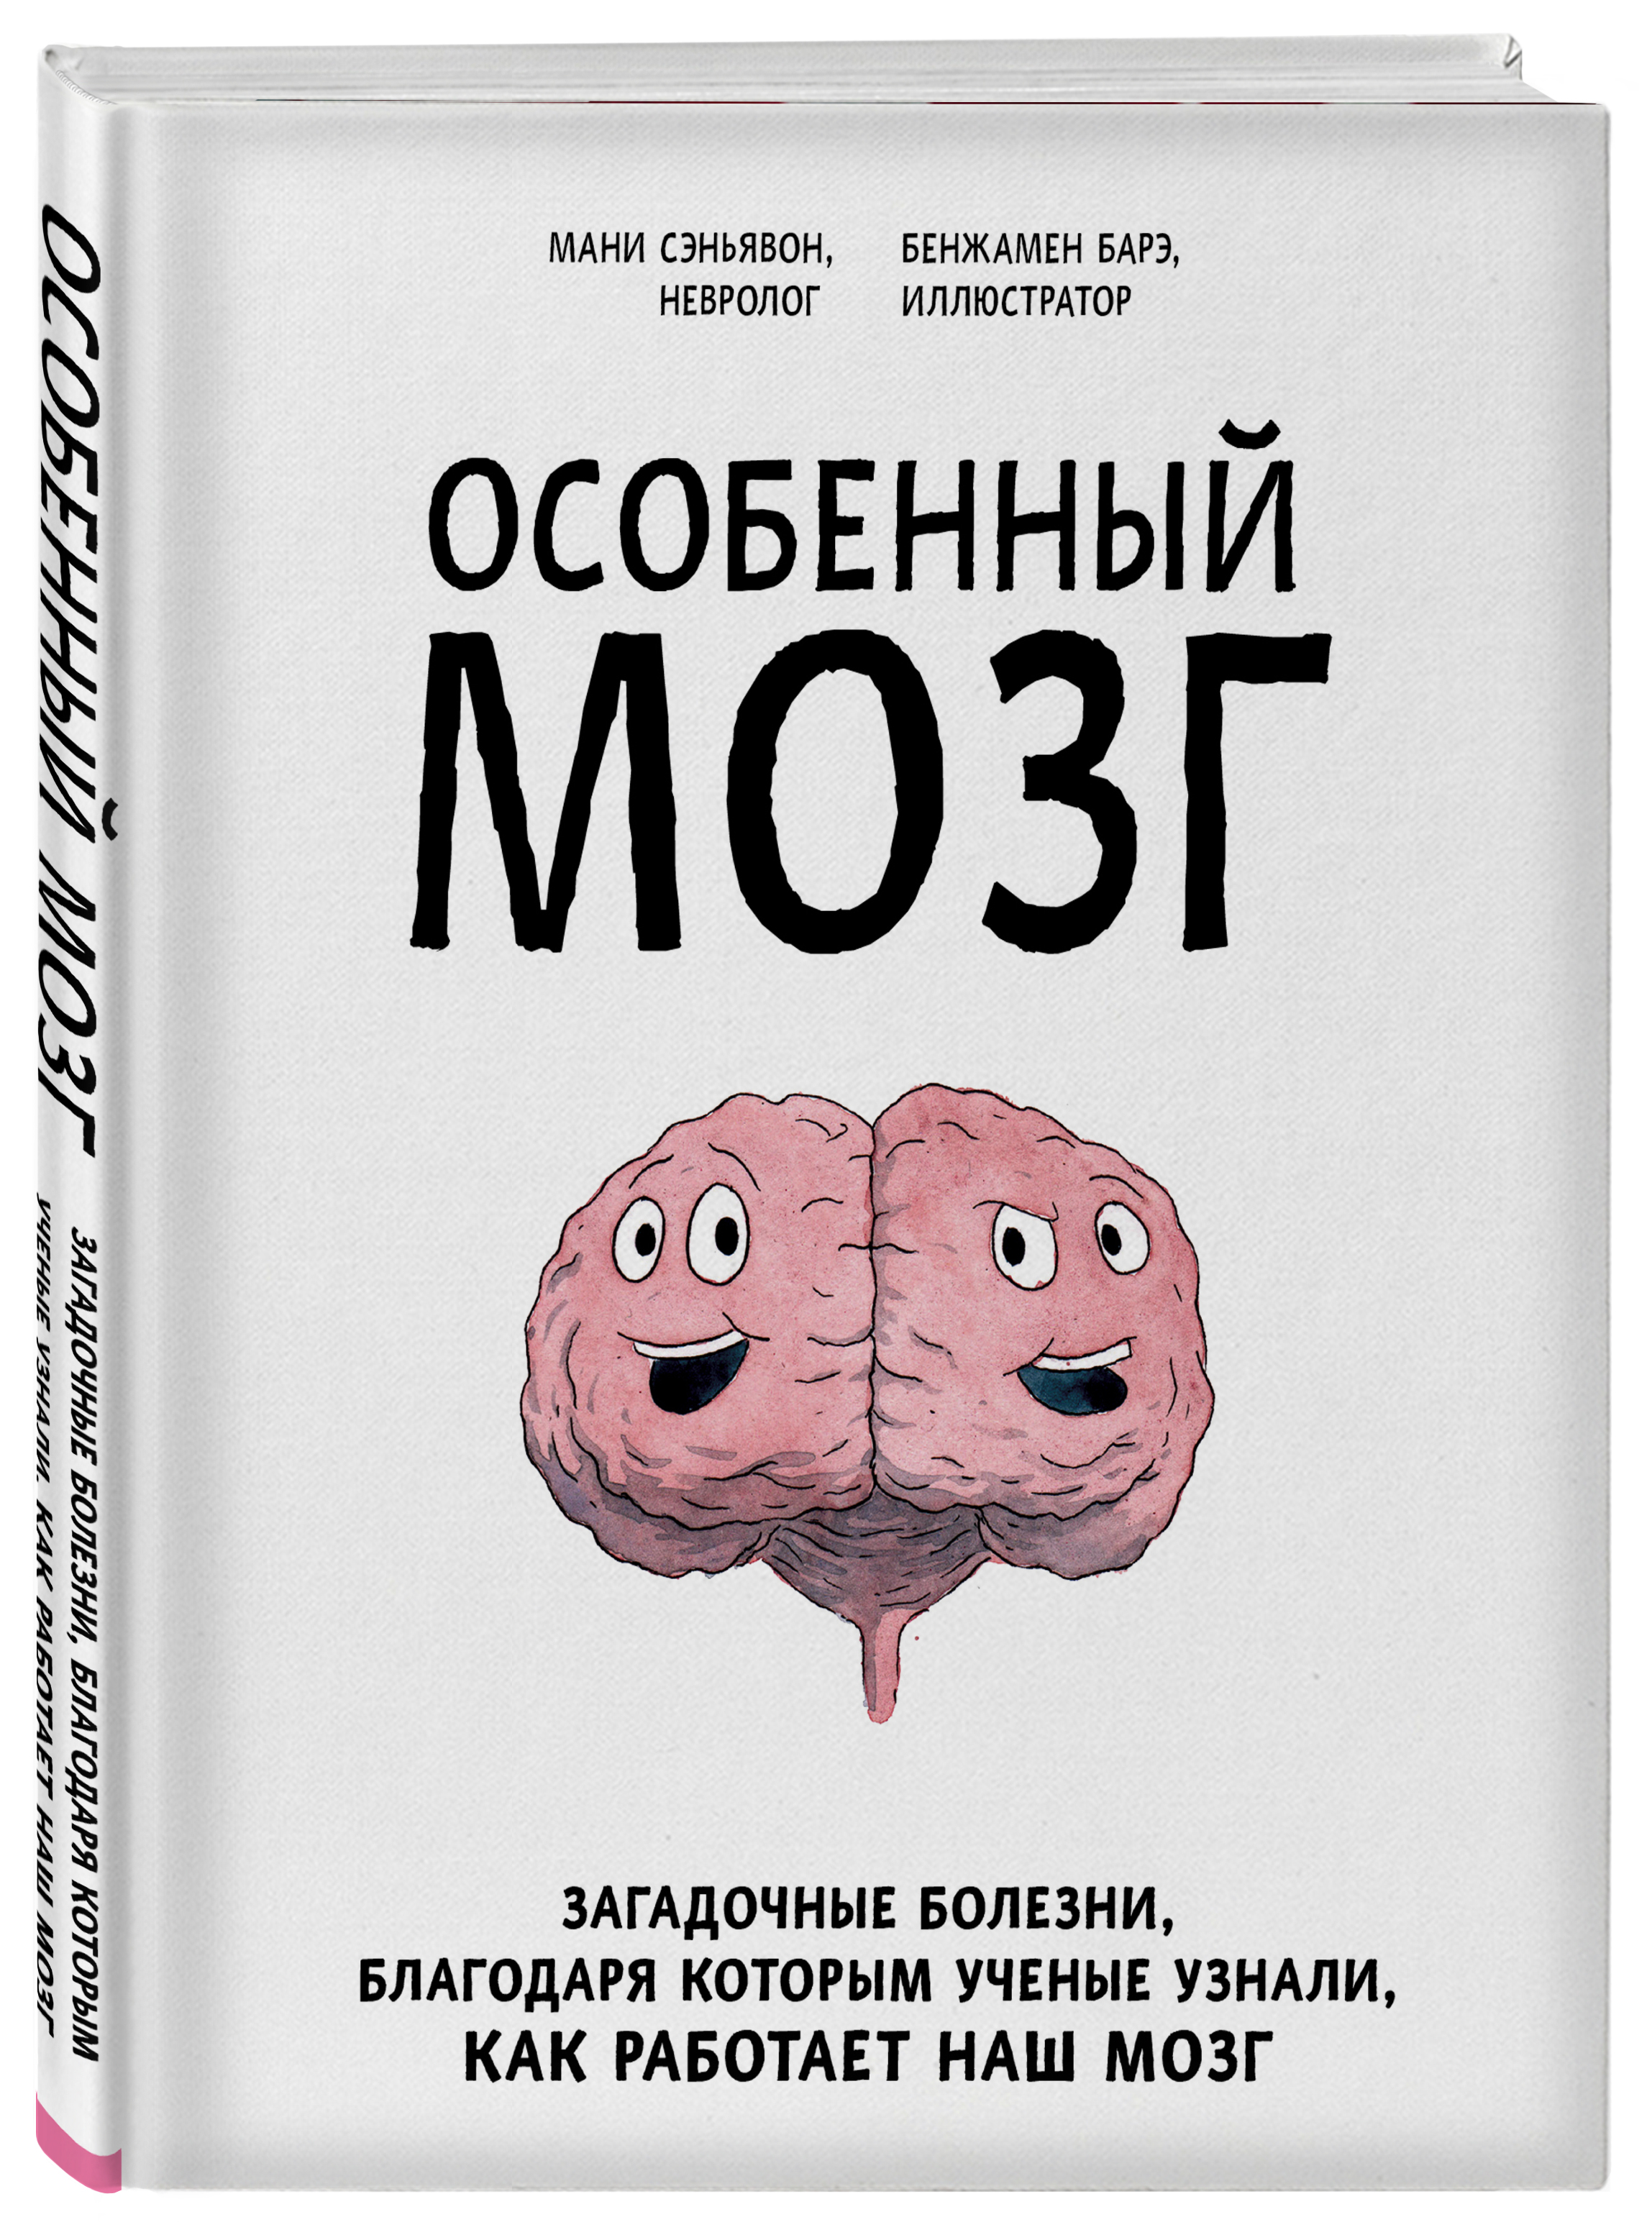 Книга мозг слушать. Особенный мозг. Особенный мозг книга. Загадочный мозг. Наш мозг книга.